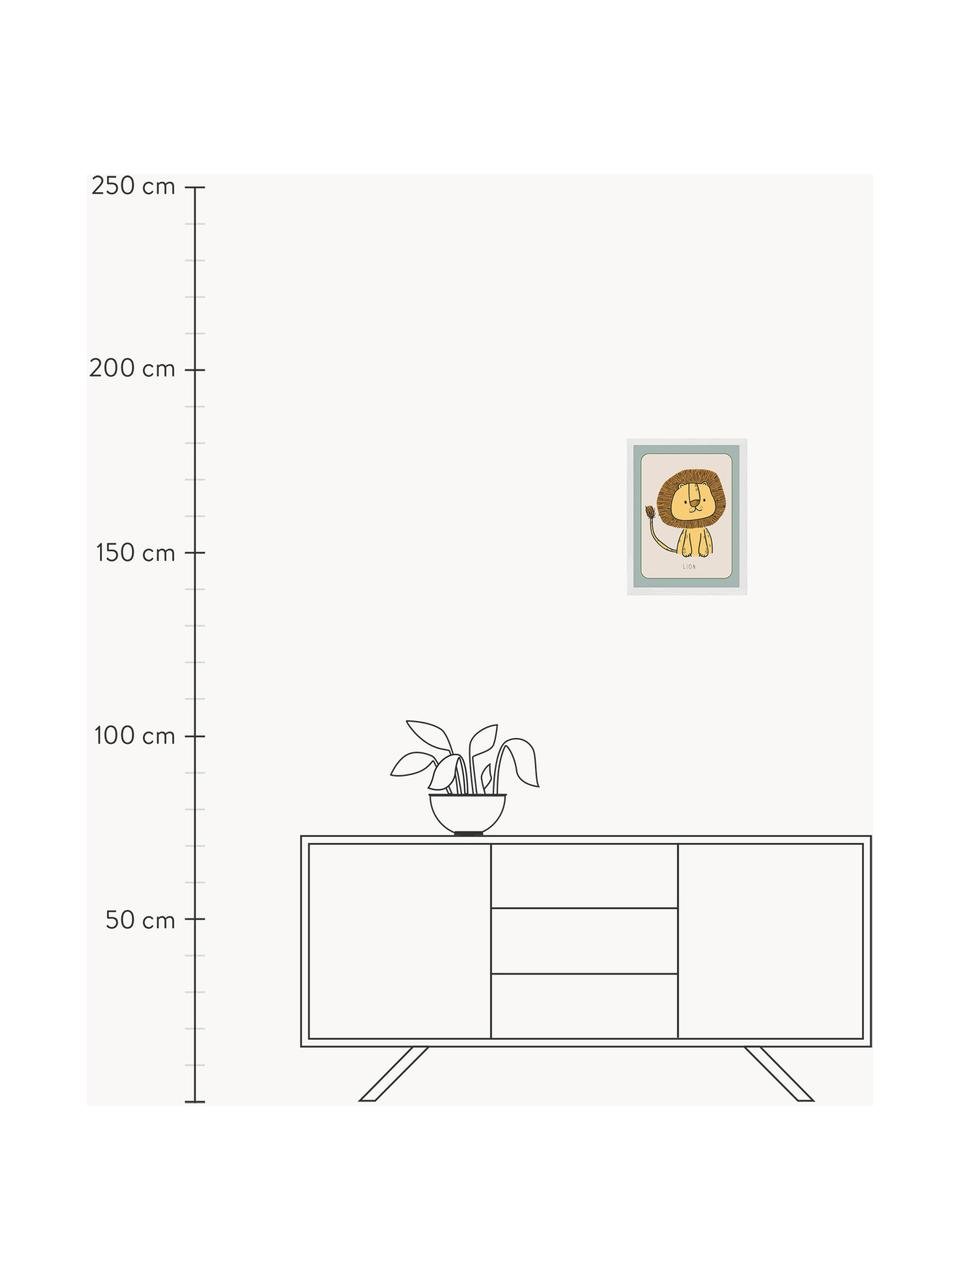 Gerahmter Digitaldruck Lion, Rahmen: Buchenholz, FSC zertifizi, Bild: Digitaldruck auf Papier, , Front: Acrylglas, Weiss, Senfgelb, Salbeigrün, B 33 x H 43 cm